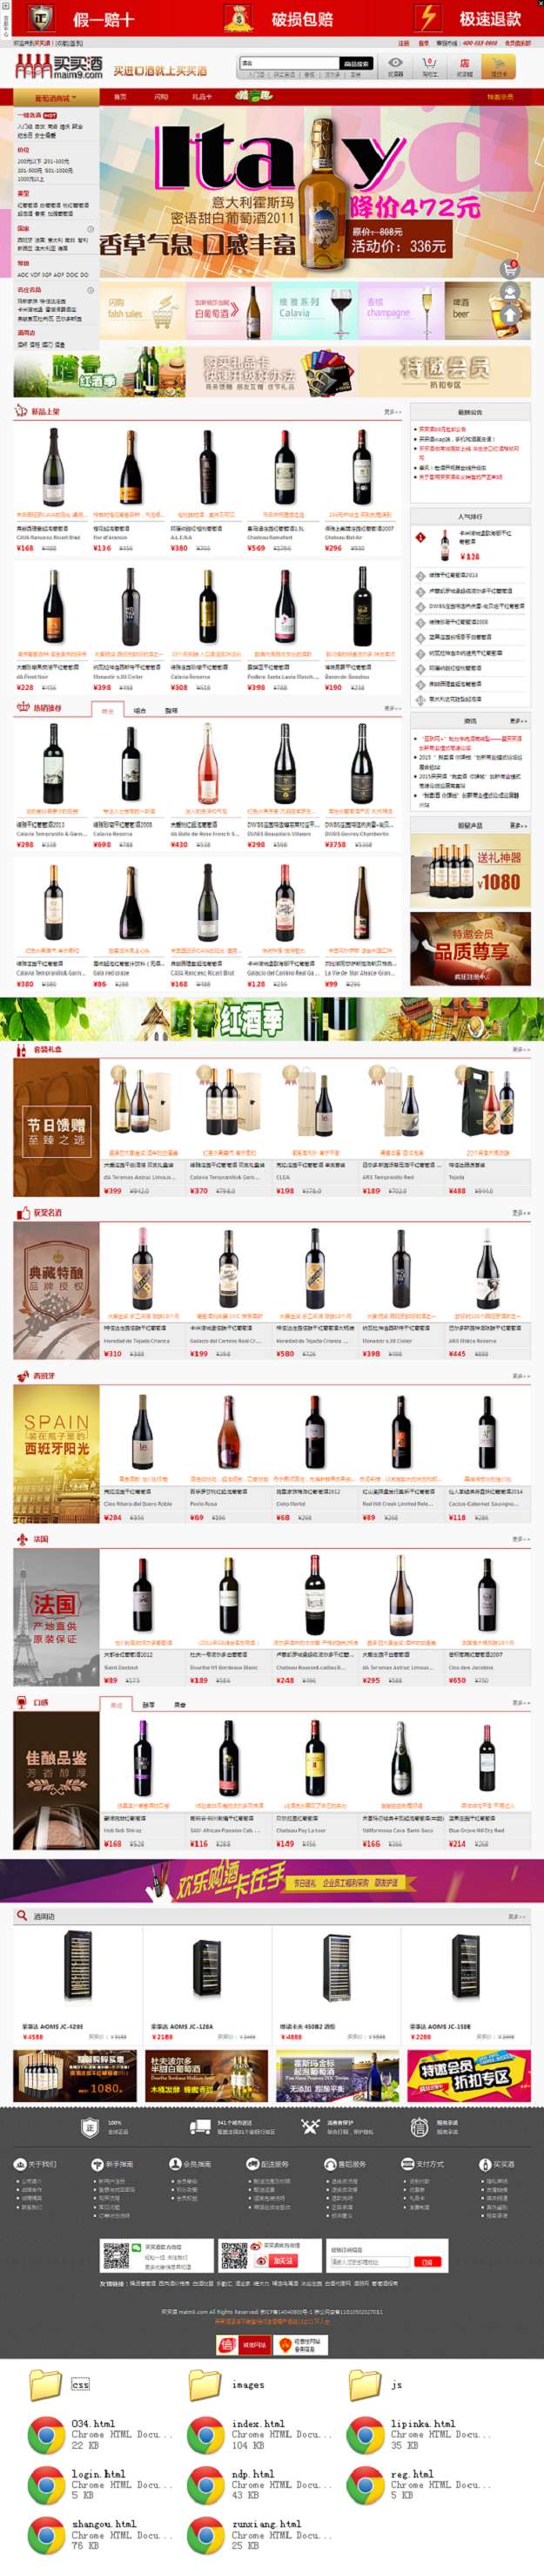 个人原创                                红色的买买酒葡萄酒商城全套模板源码_商城网站模板插图源码资源库